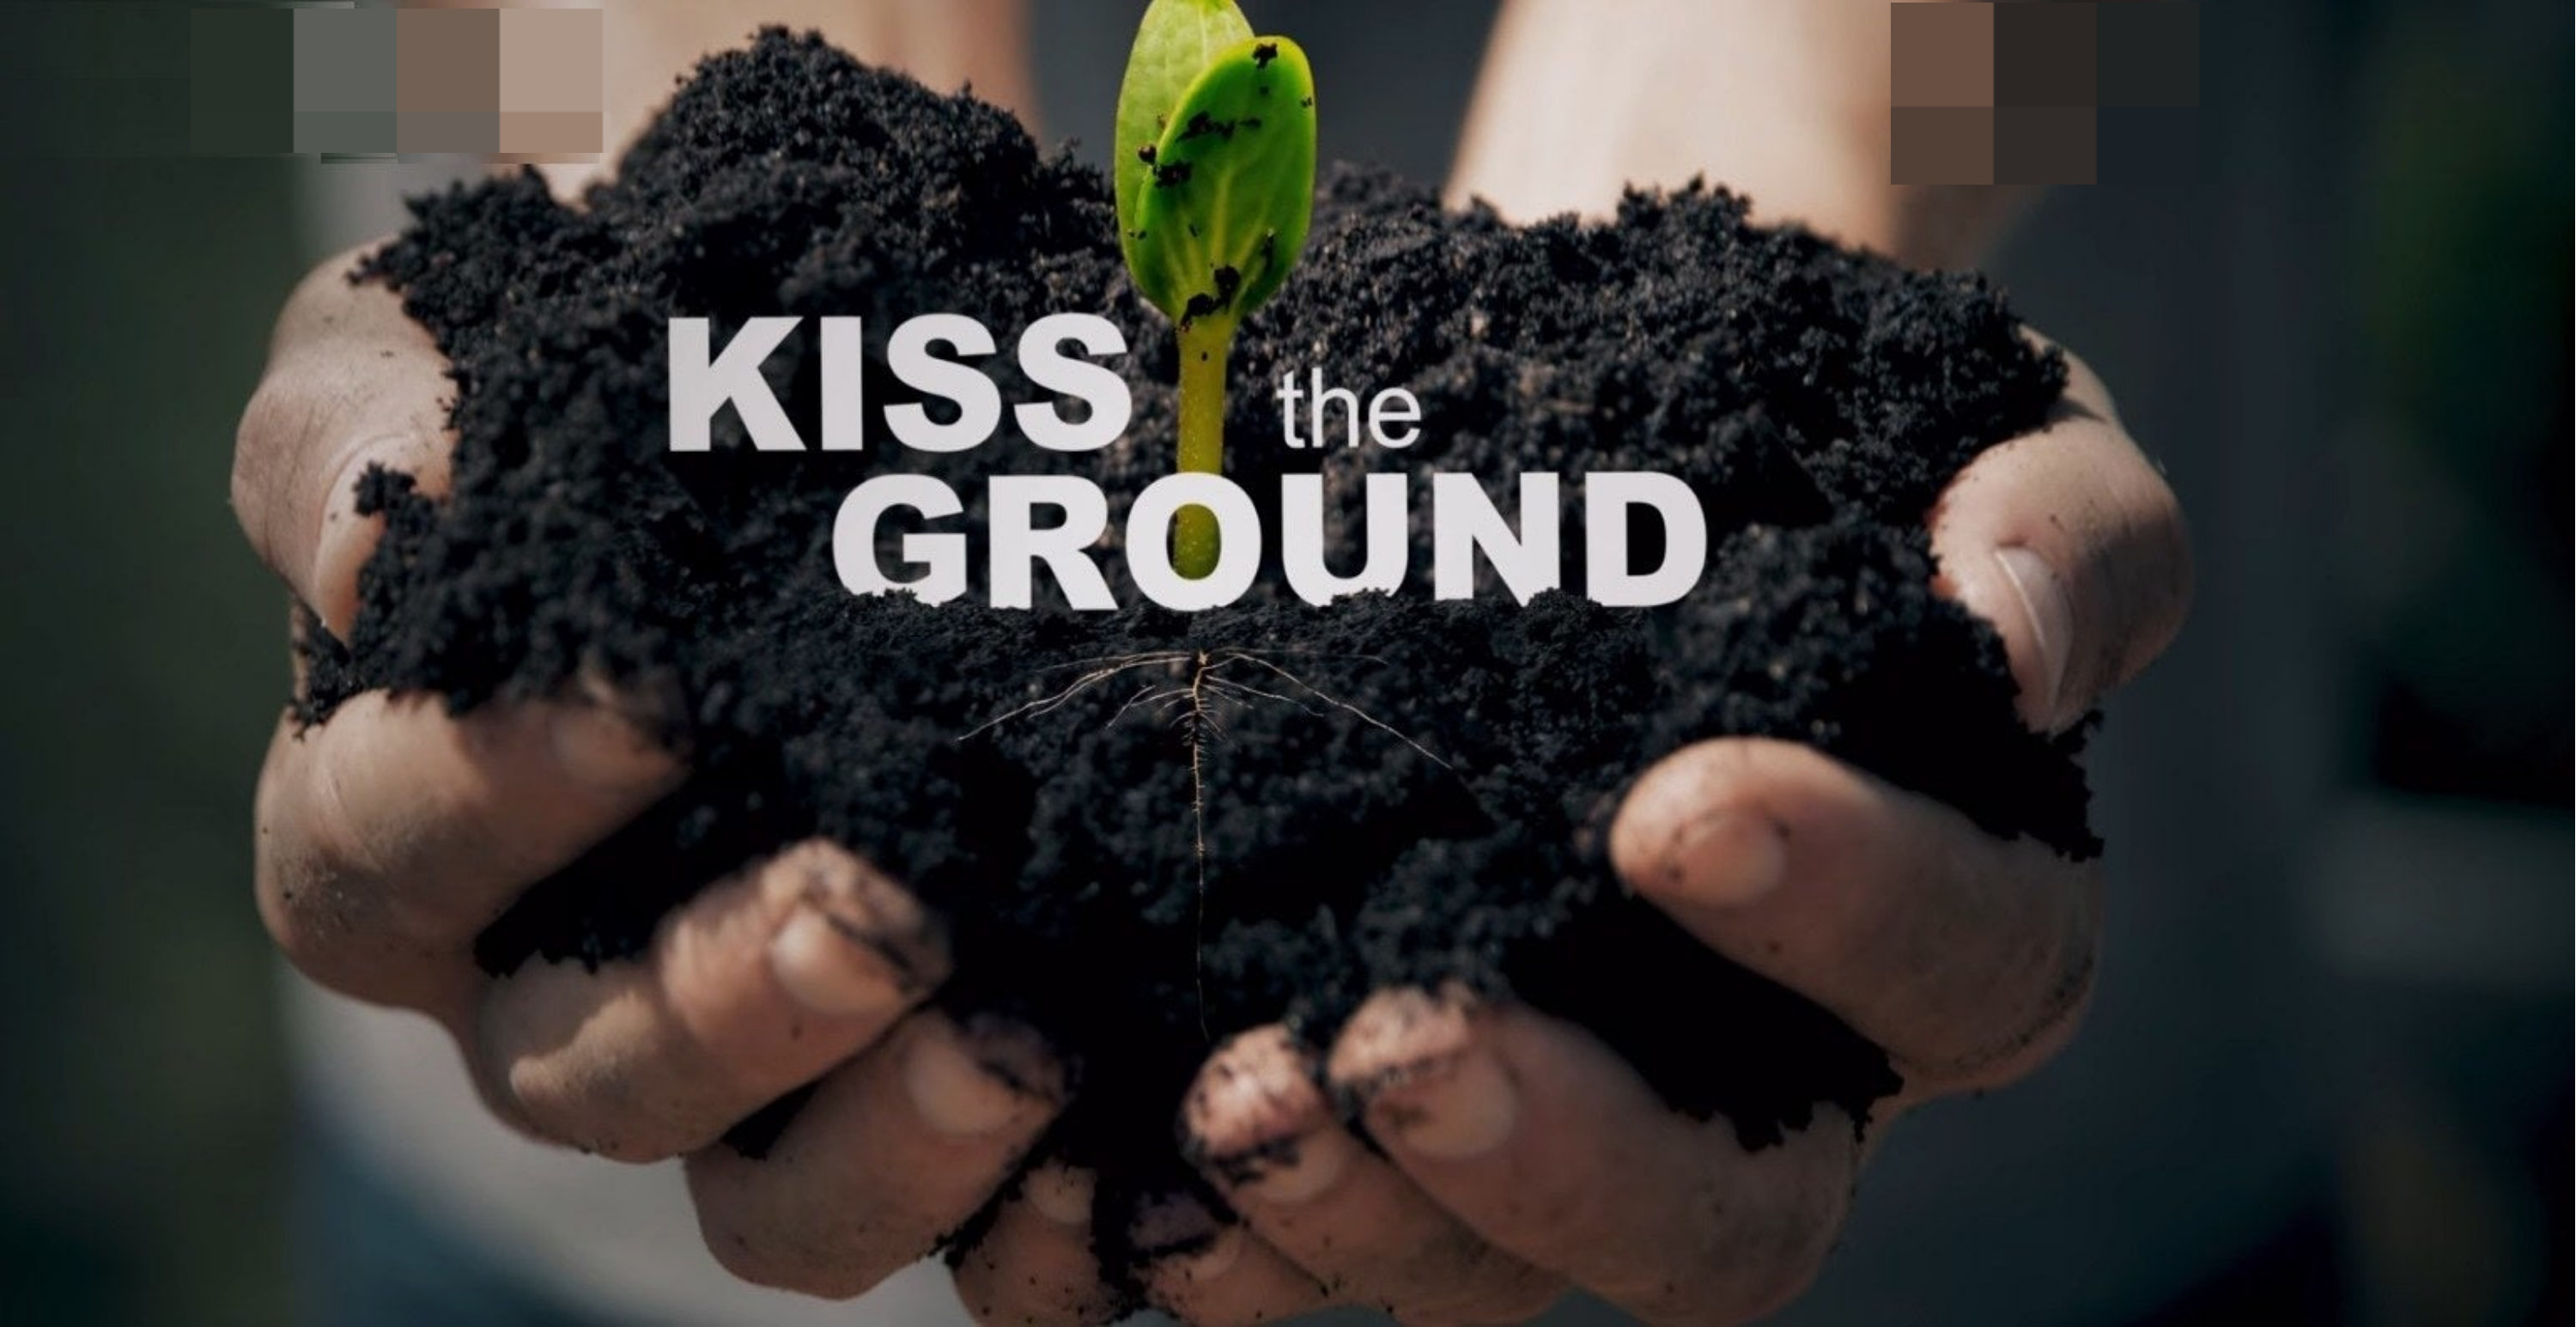 Kiss the ground Netflix title screen